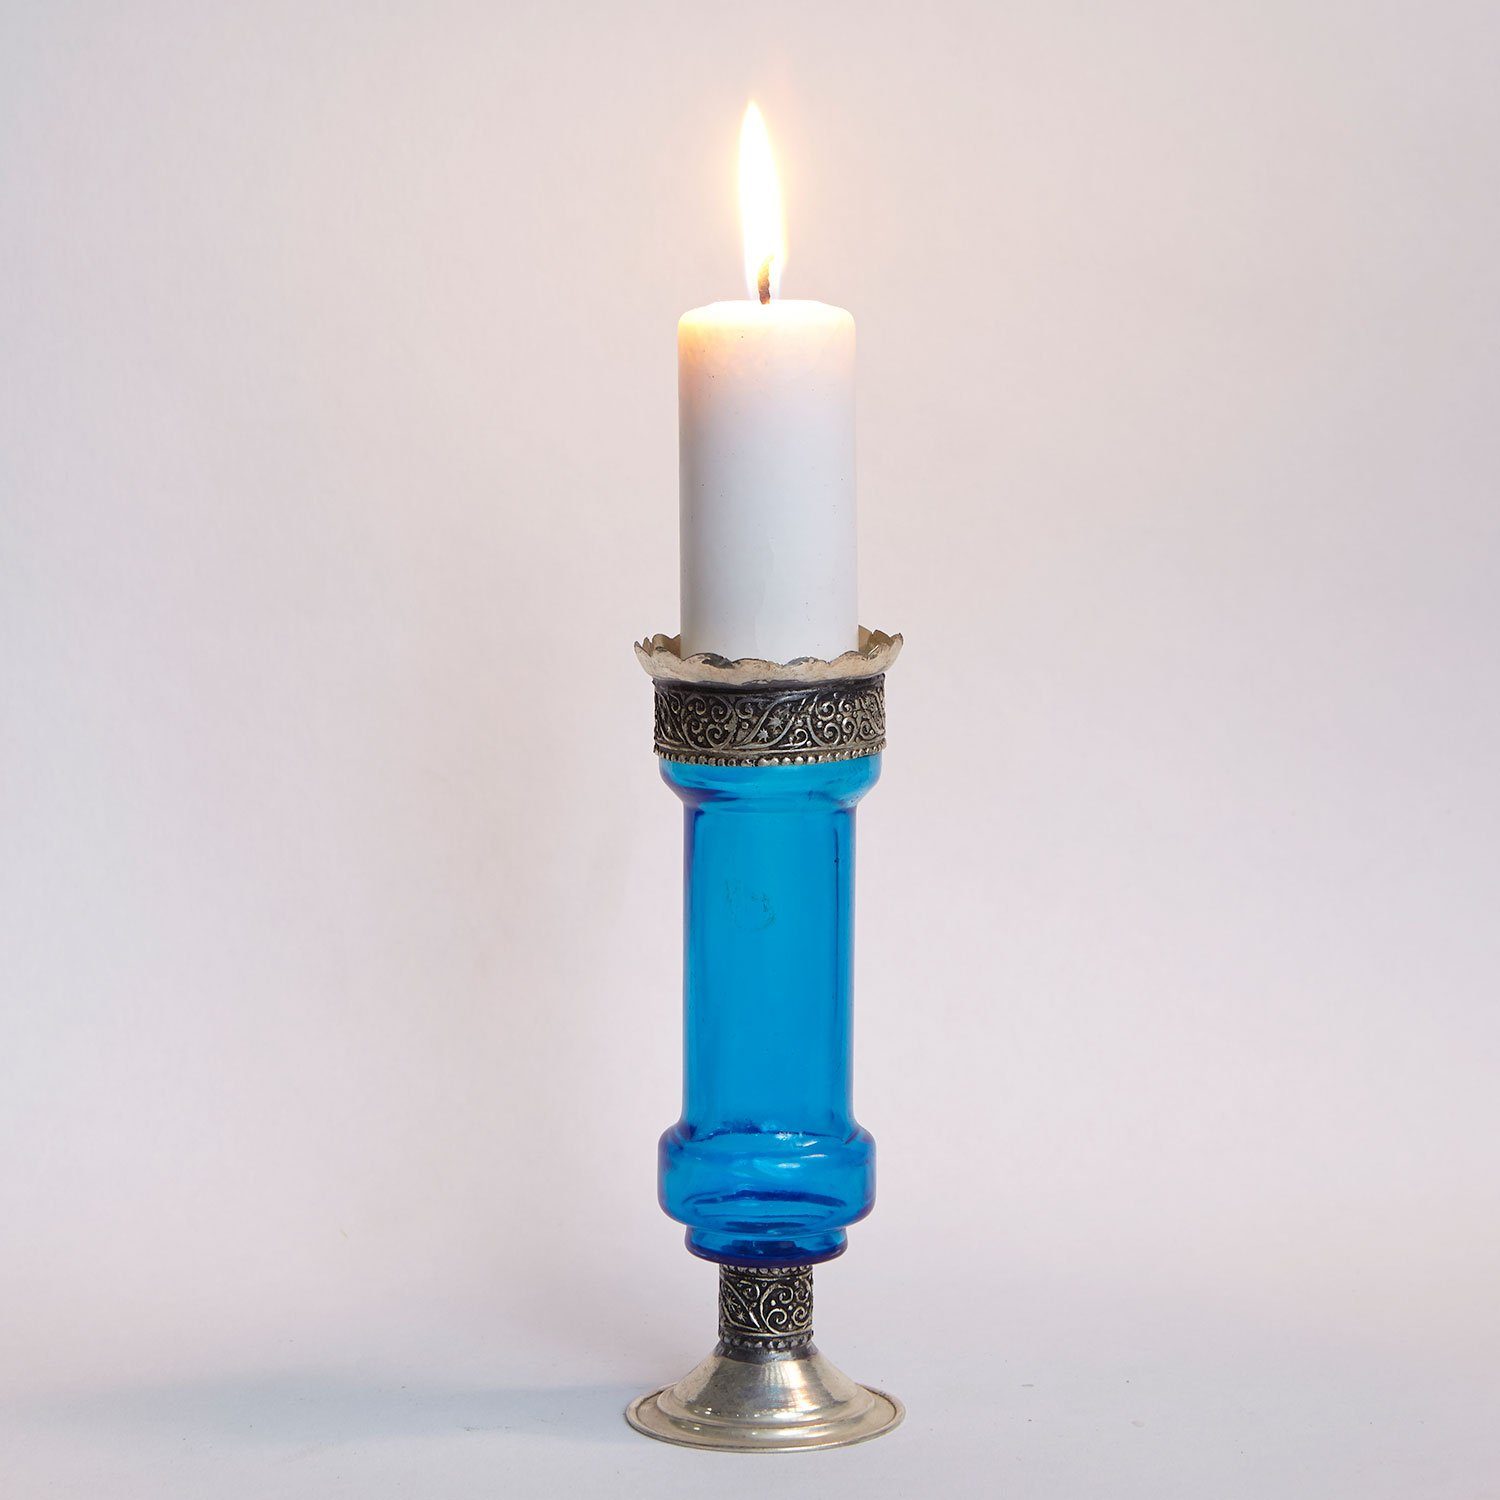 Casa Moro Kerzenständer Orientalischer Kerzenständer romantische für marokkanische Manar & Kerzenlicht (Kerzenhalter Kerzenleuchter Blau Weihnachtsdekoration Beleuchtung)